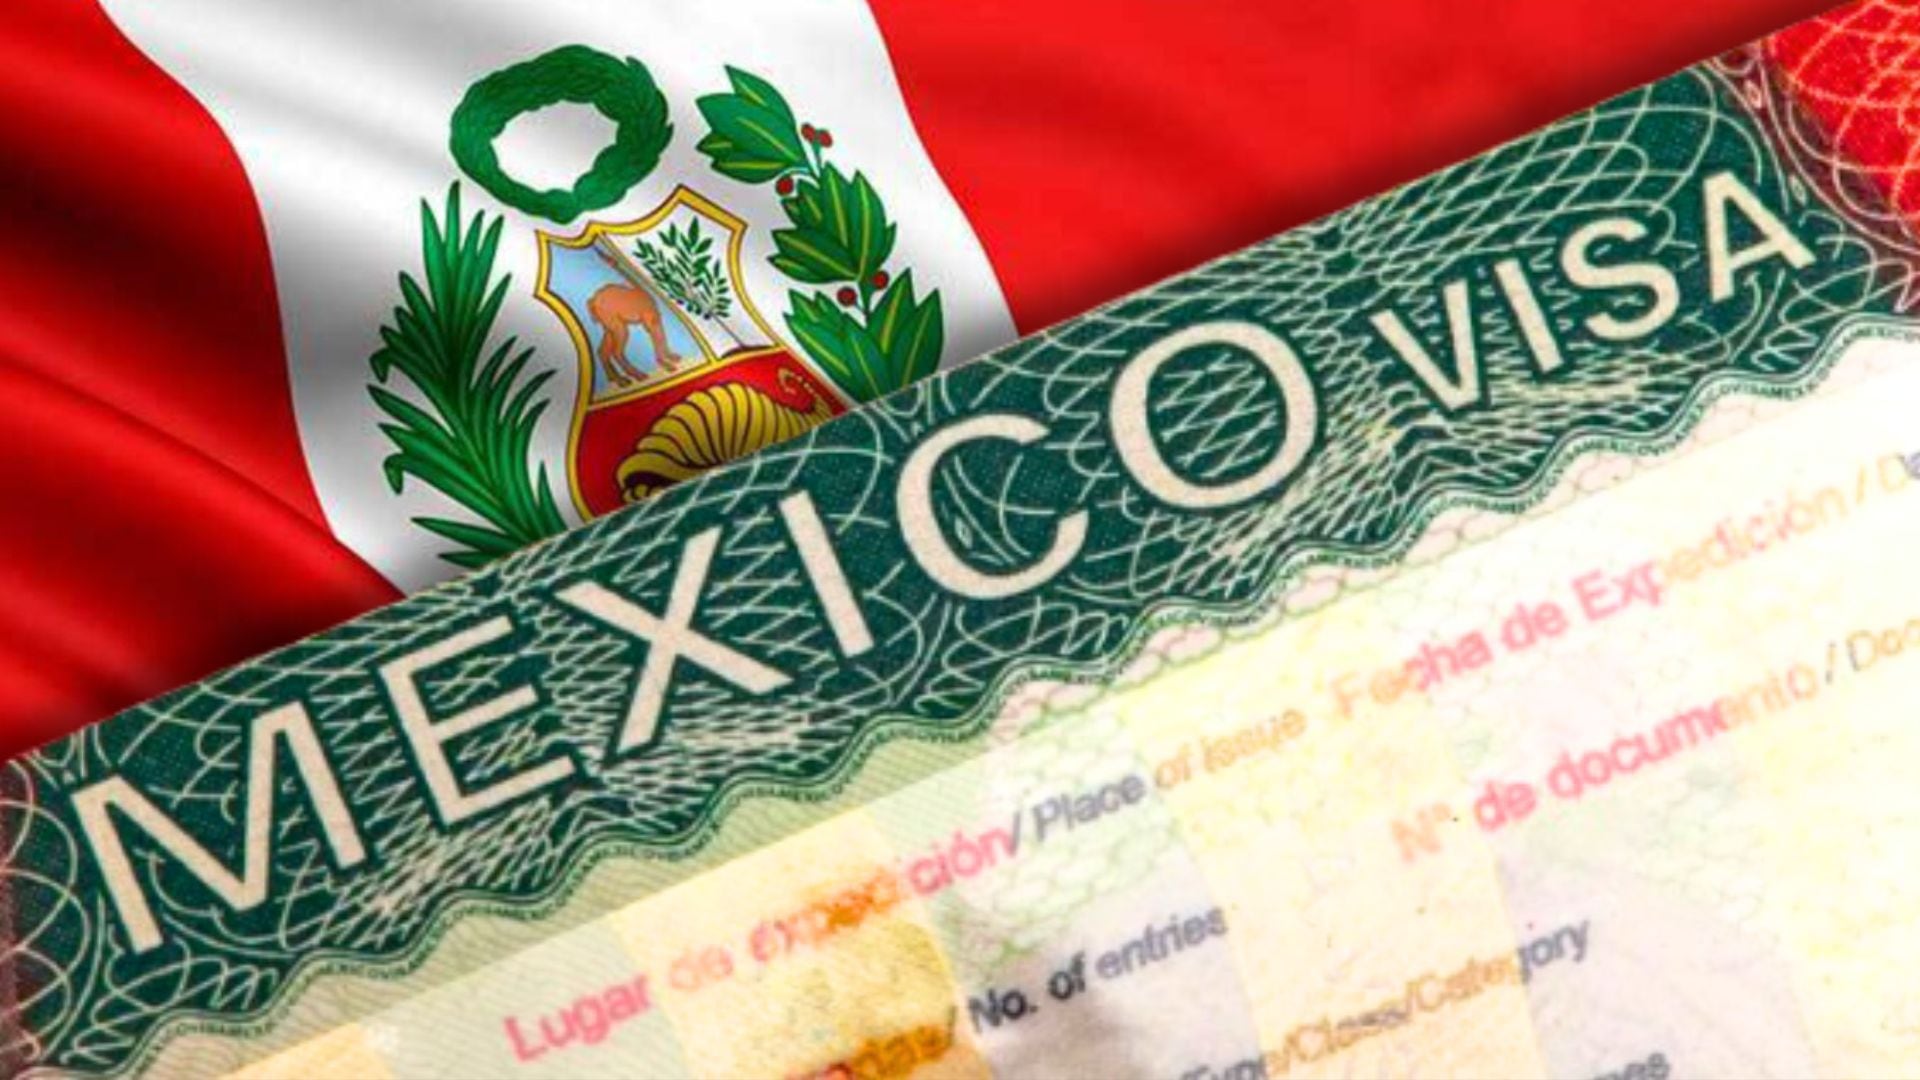 visa de México tapa a bandera de Perú